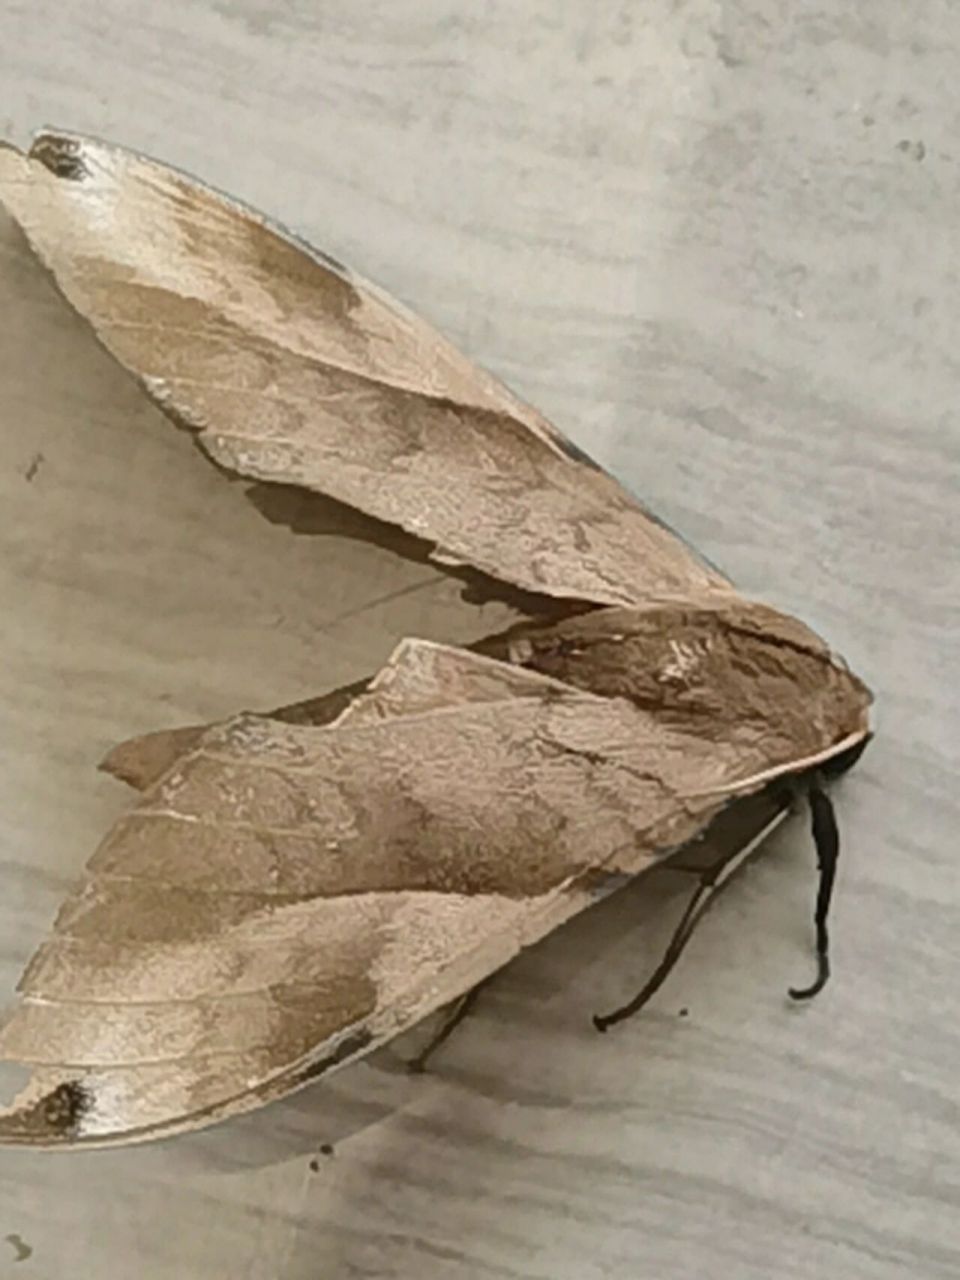 初见枯叶蛾  今天中午在公寓走廊里看到一个貌似枯树叶的东西,用脚